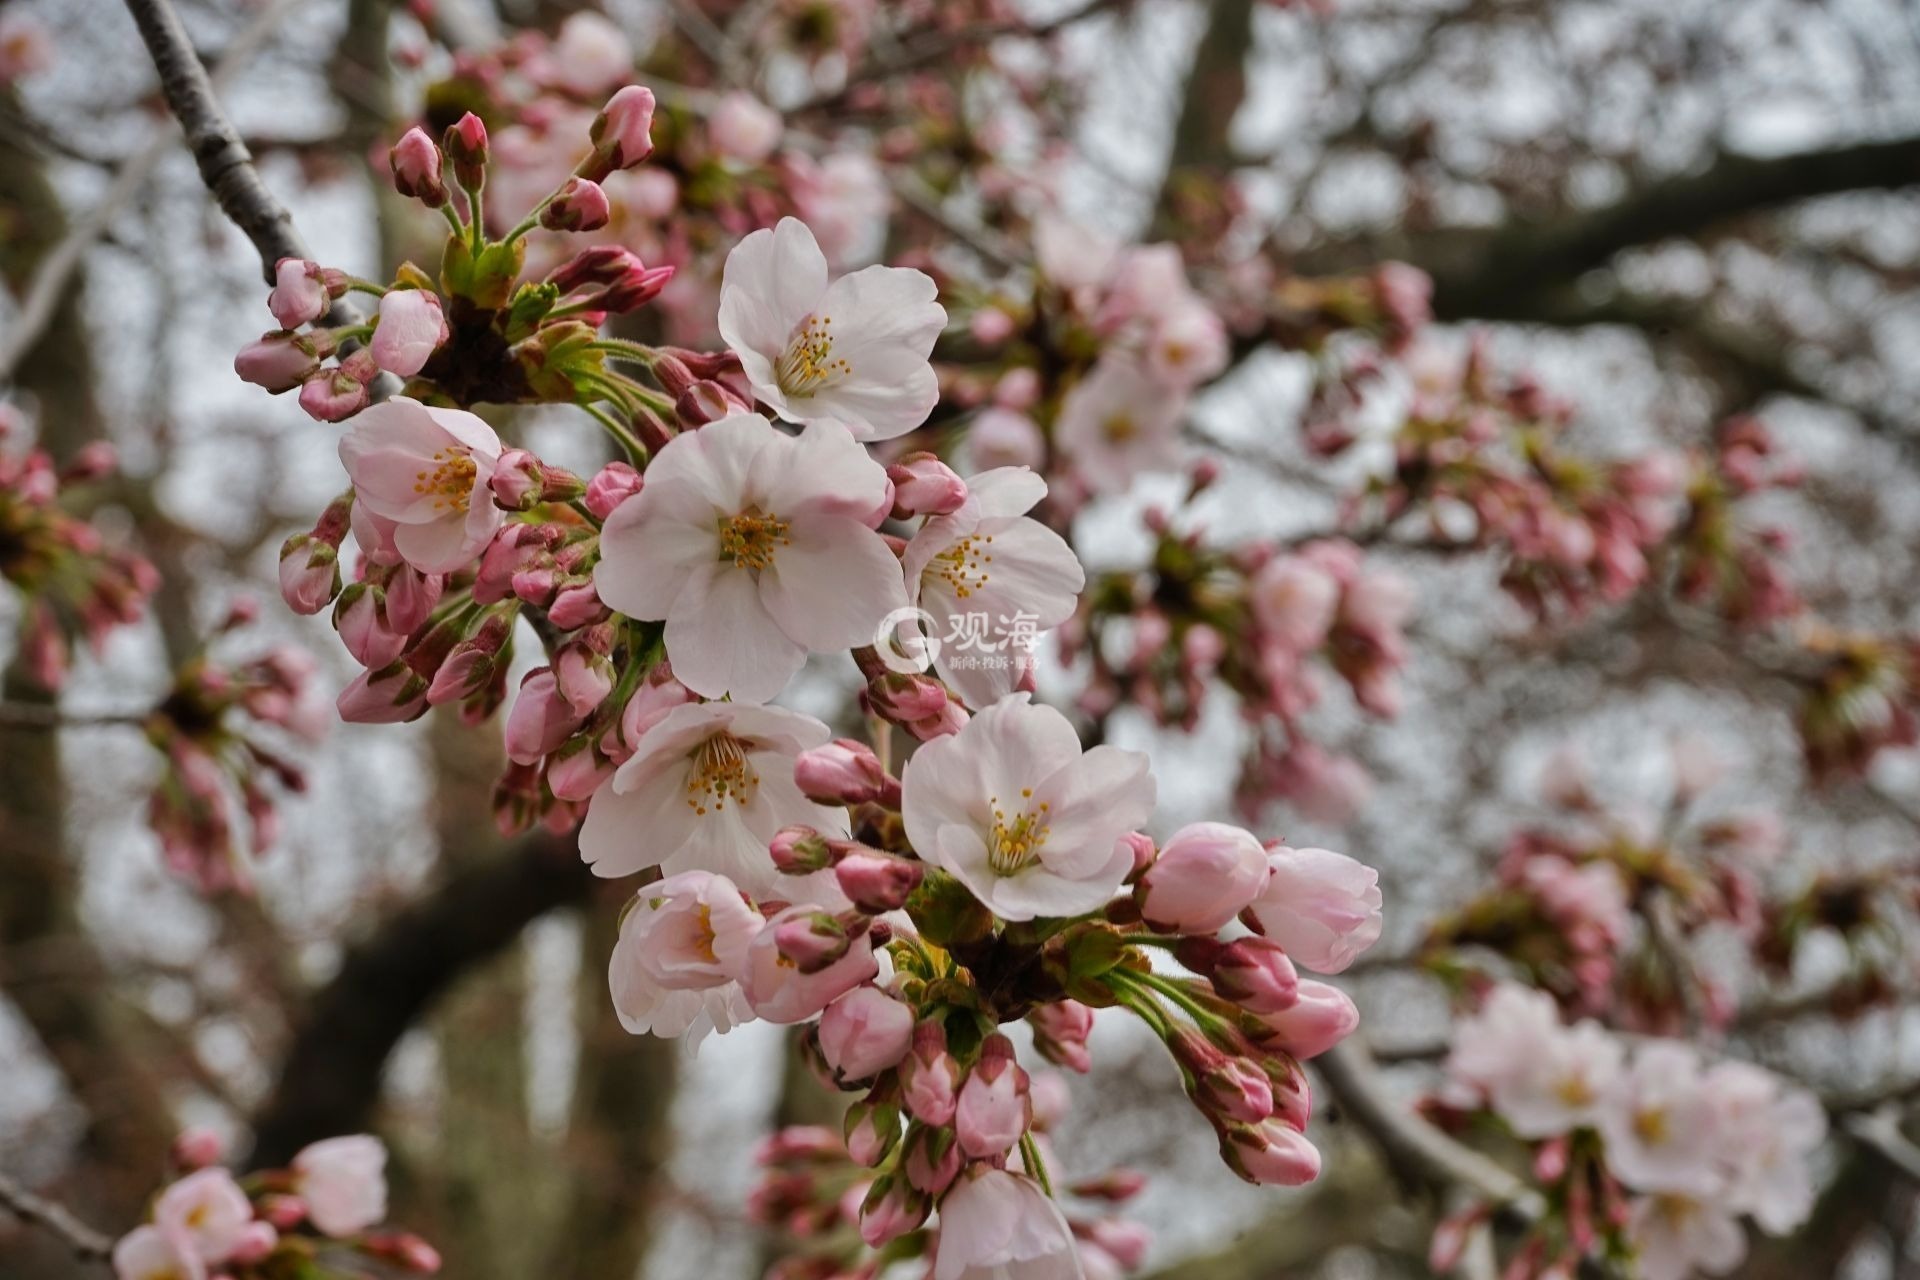 2017年3月4日上海辰山植物园盛开的樱花 - 花粉随手拍风光 花粉俱乐部